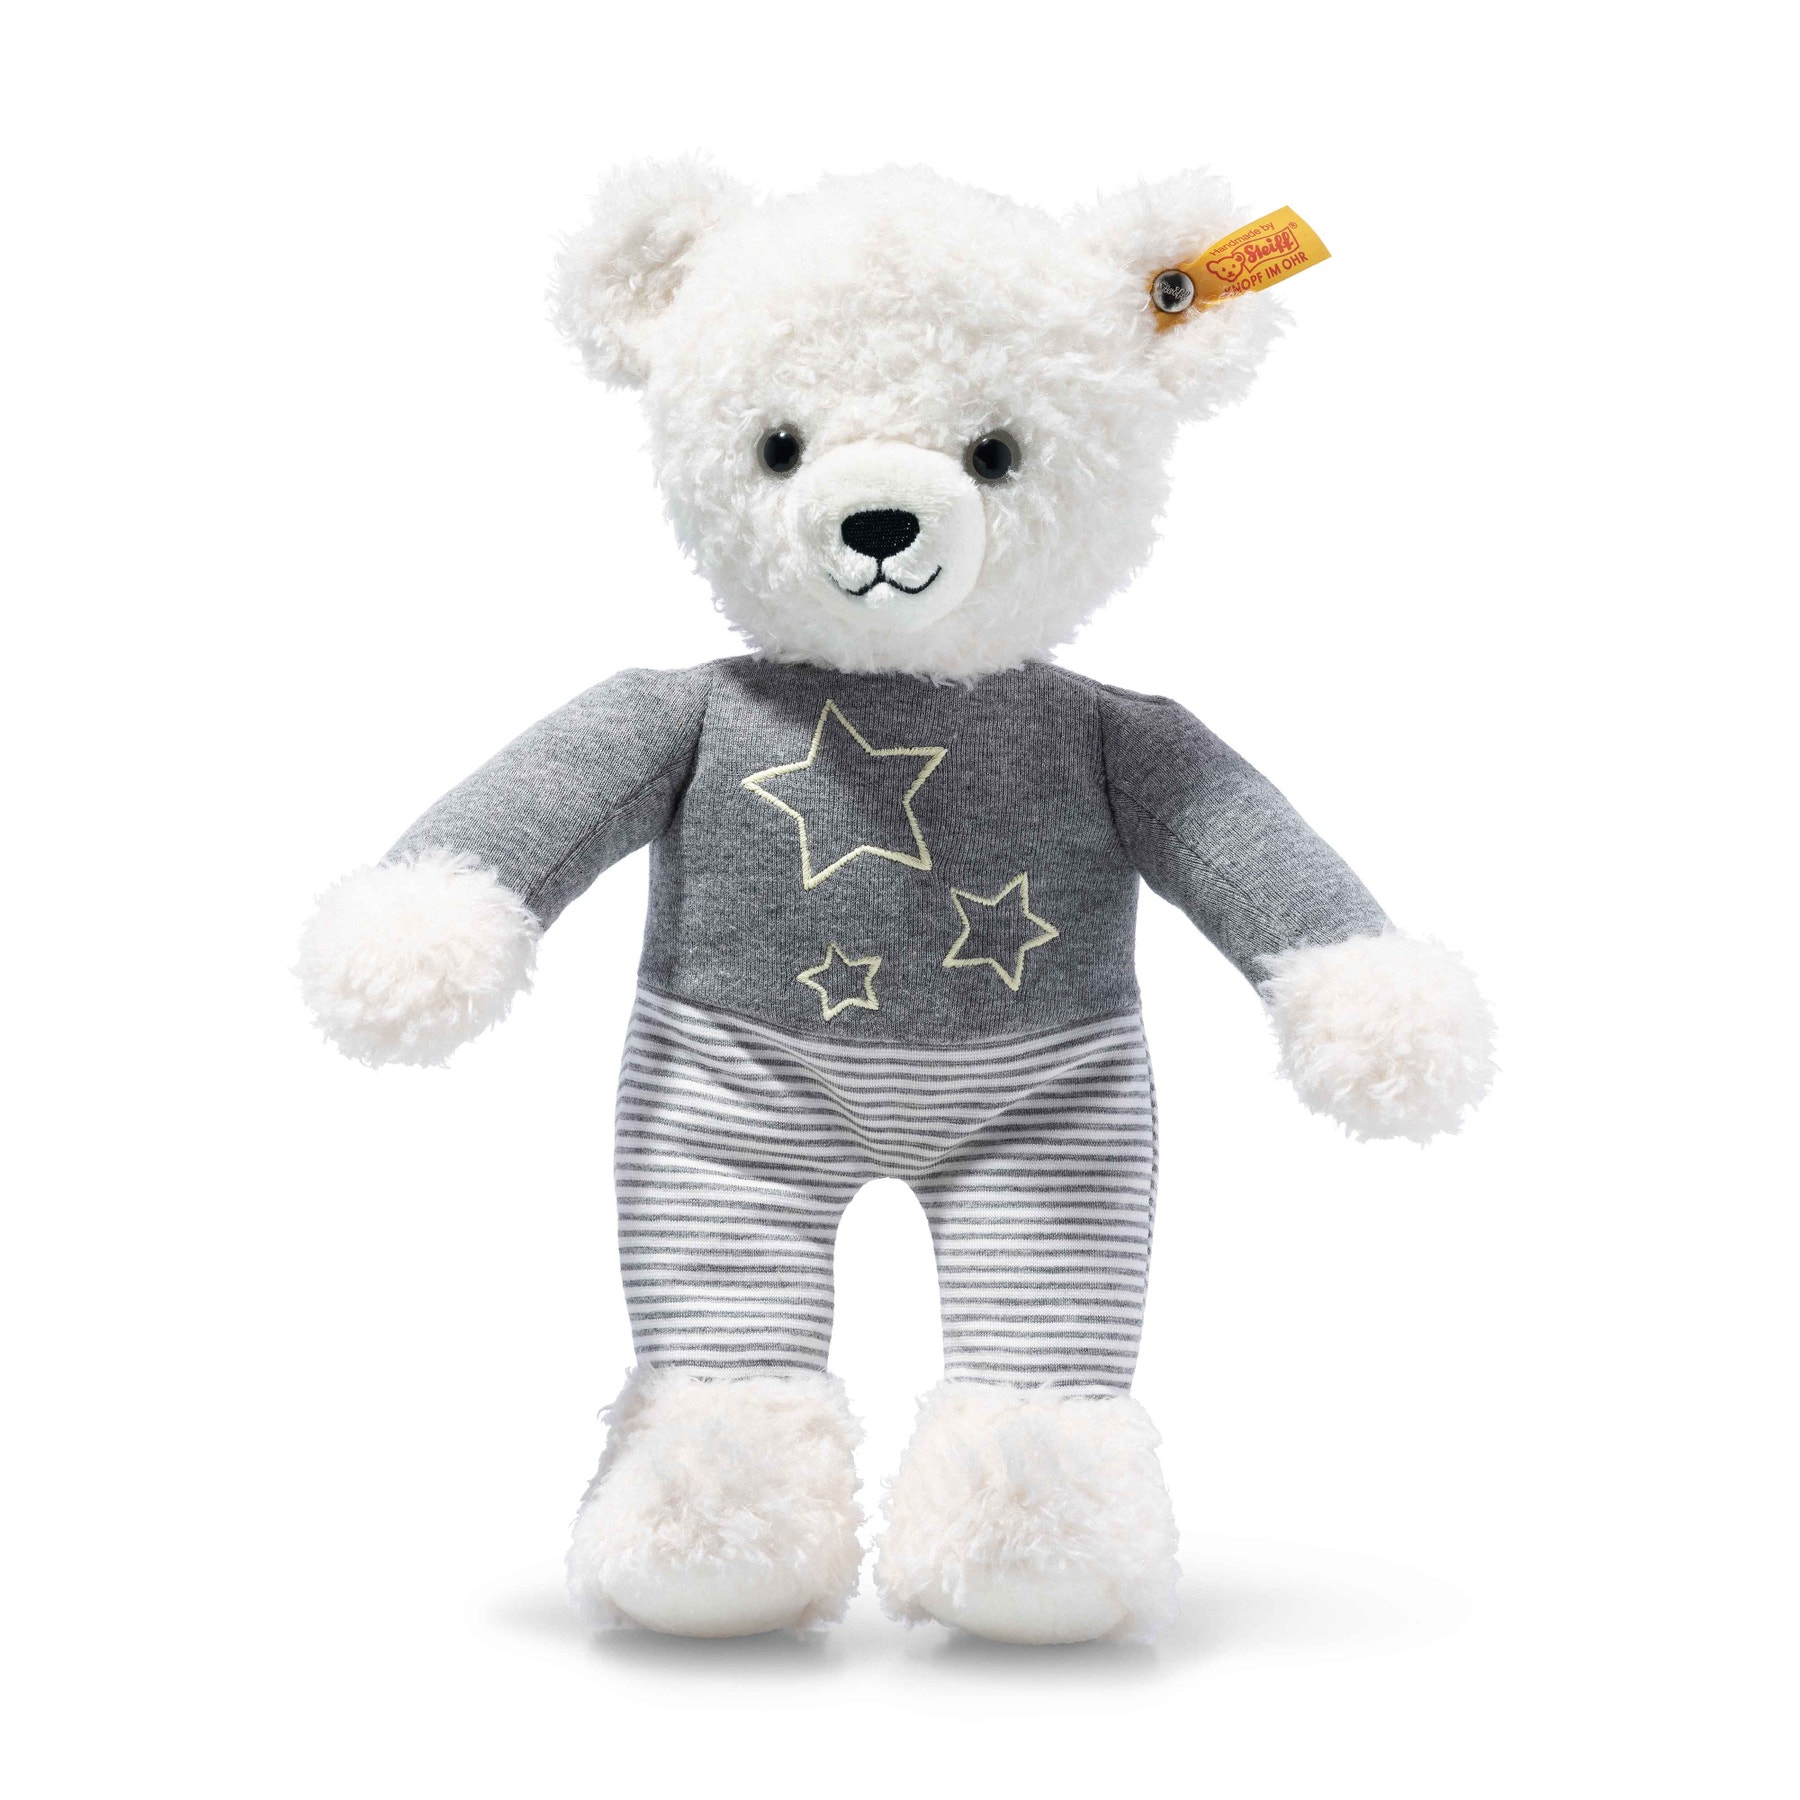 Glow-In-The-Dark Knuffi Teddy Bear